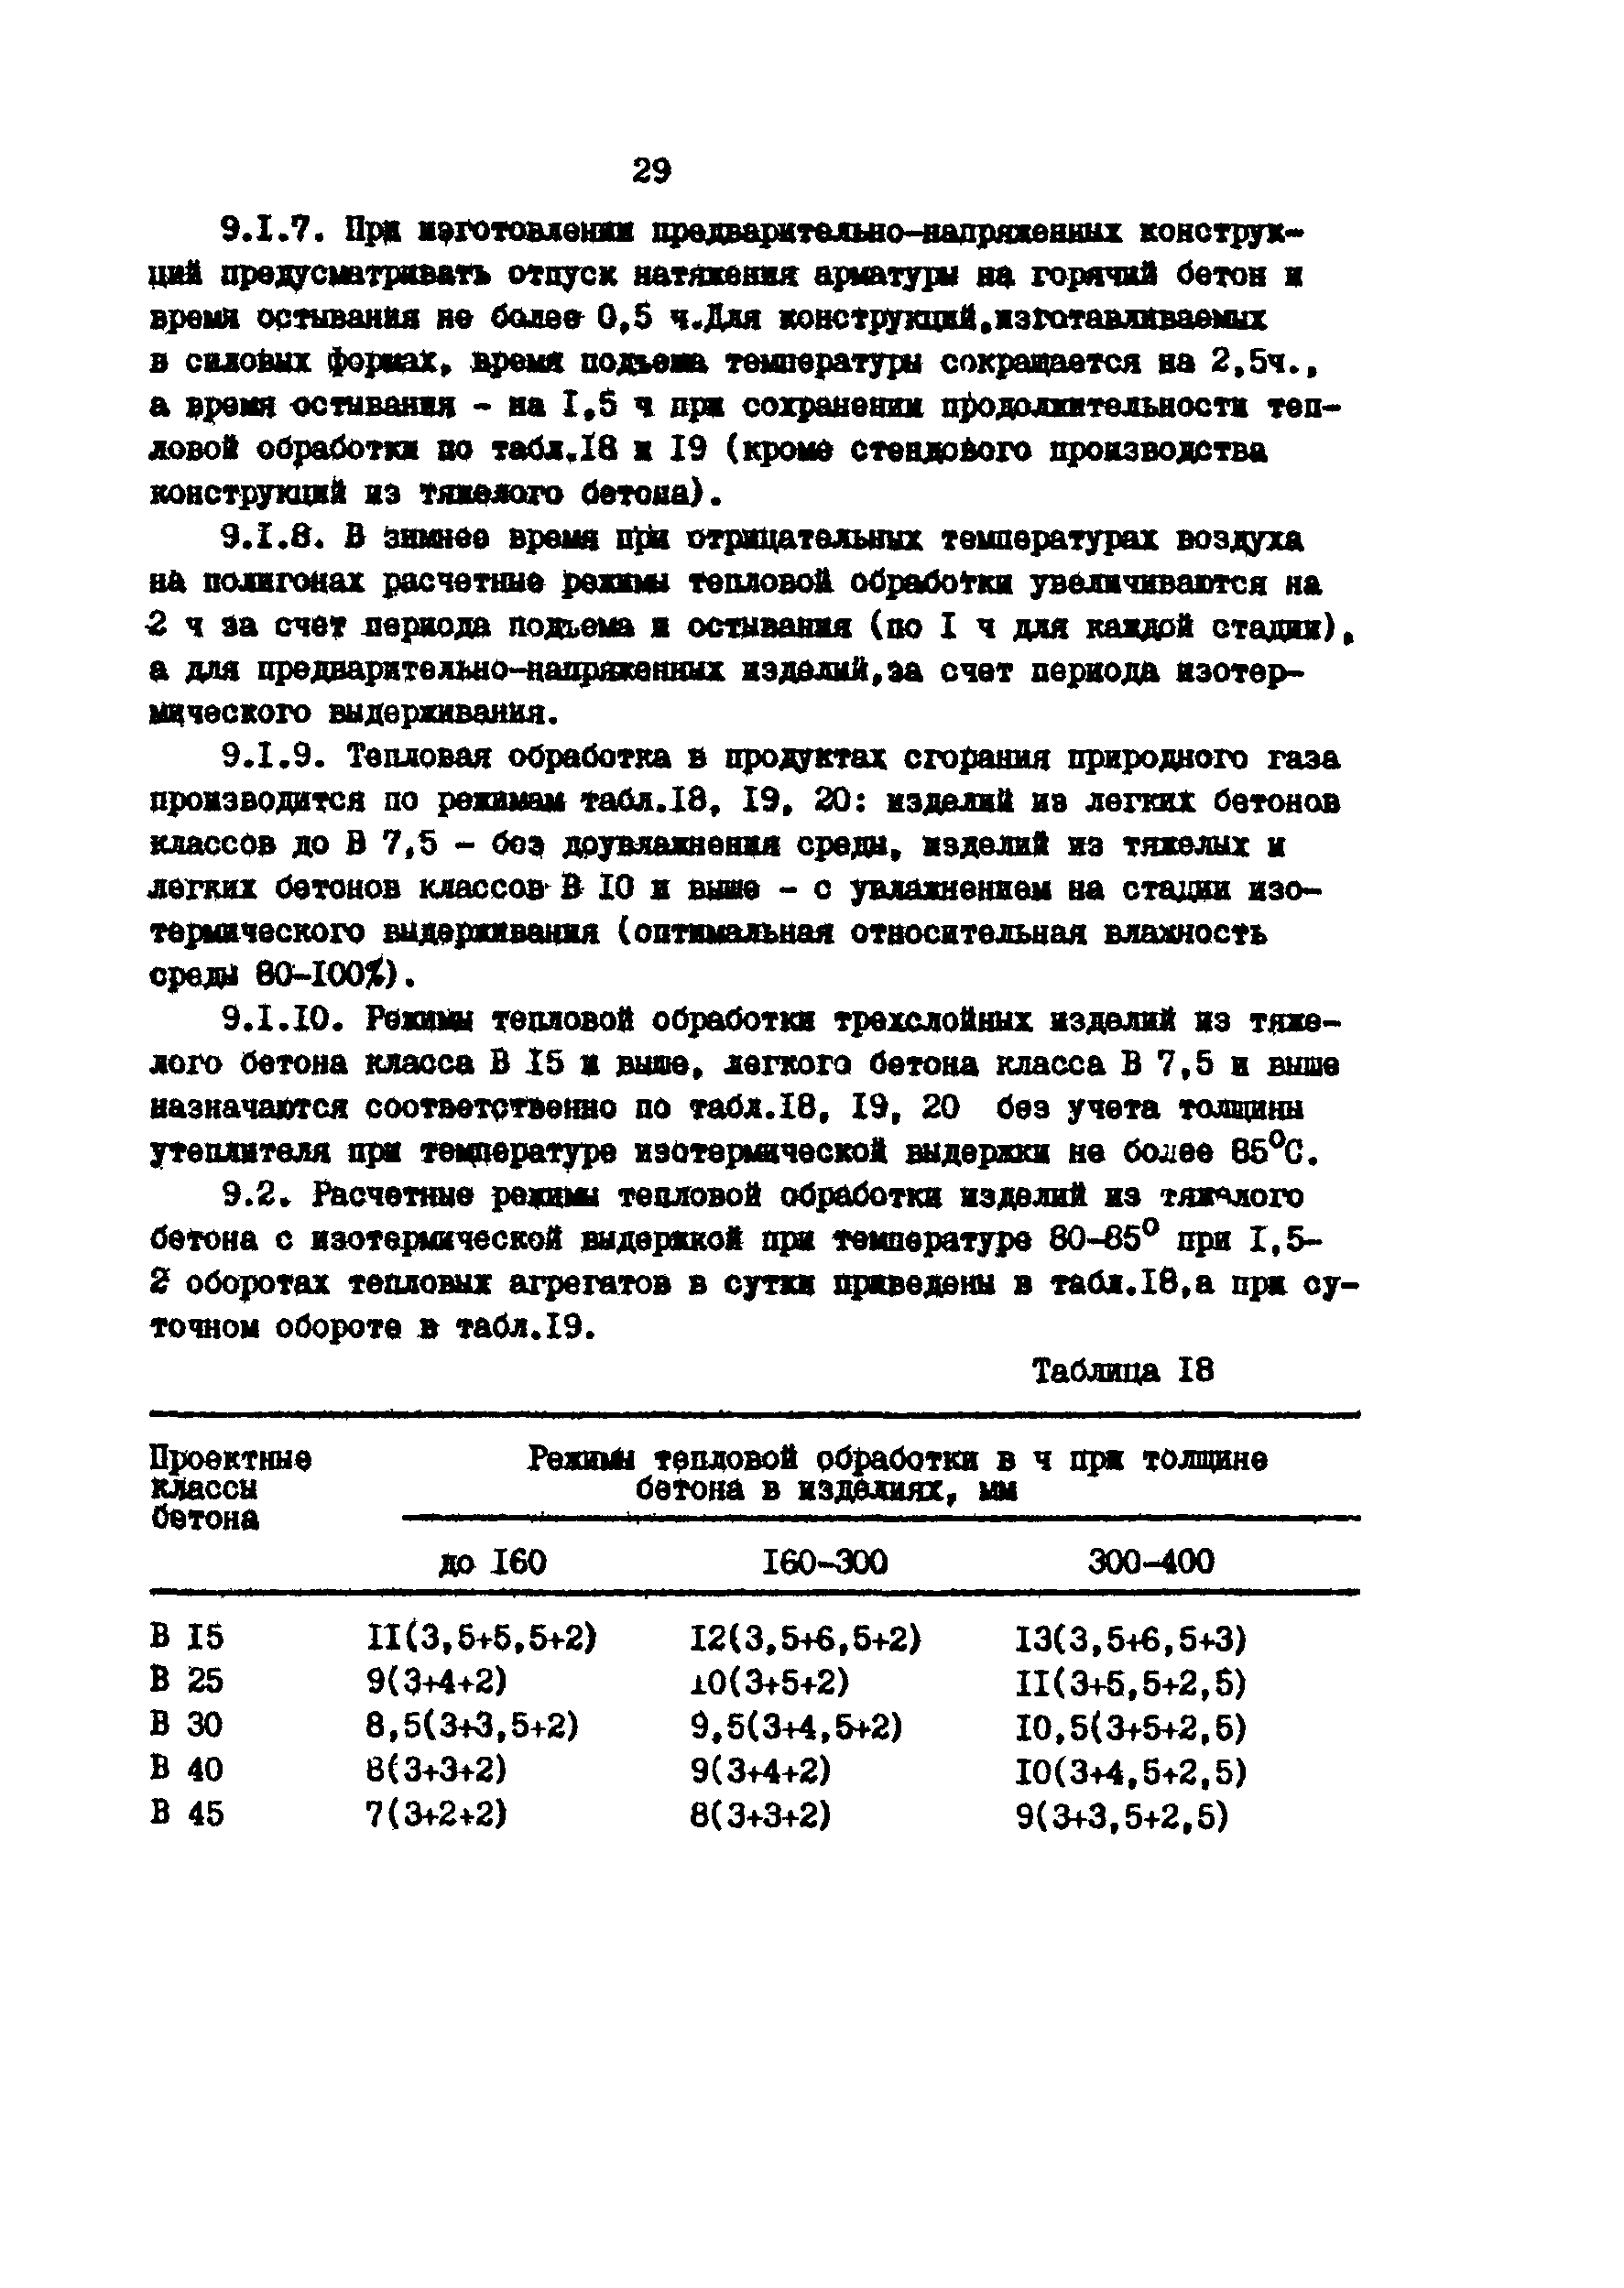 ОНТП 07-85